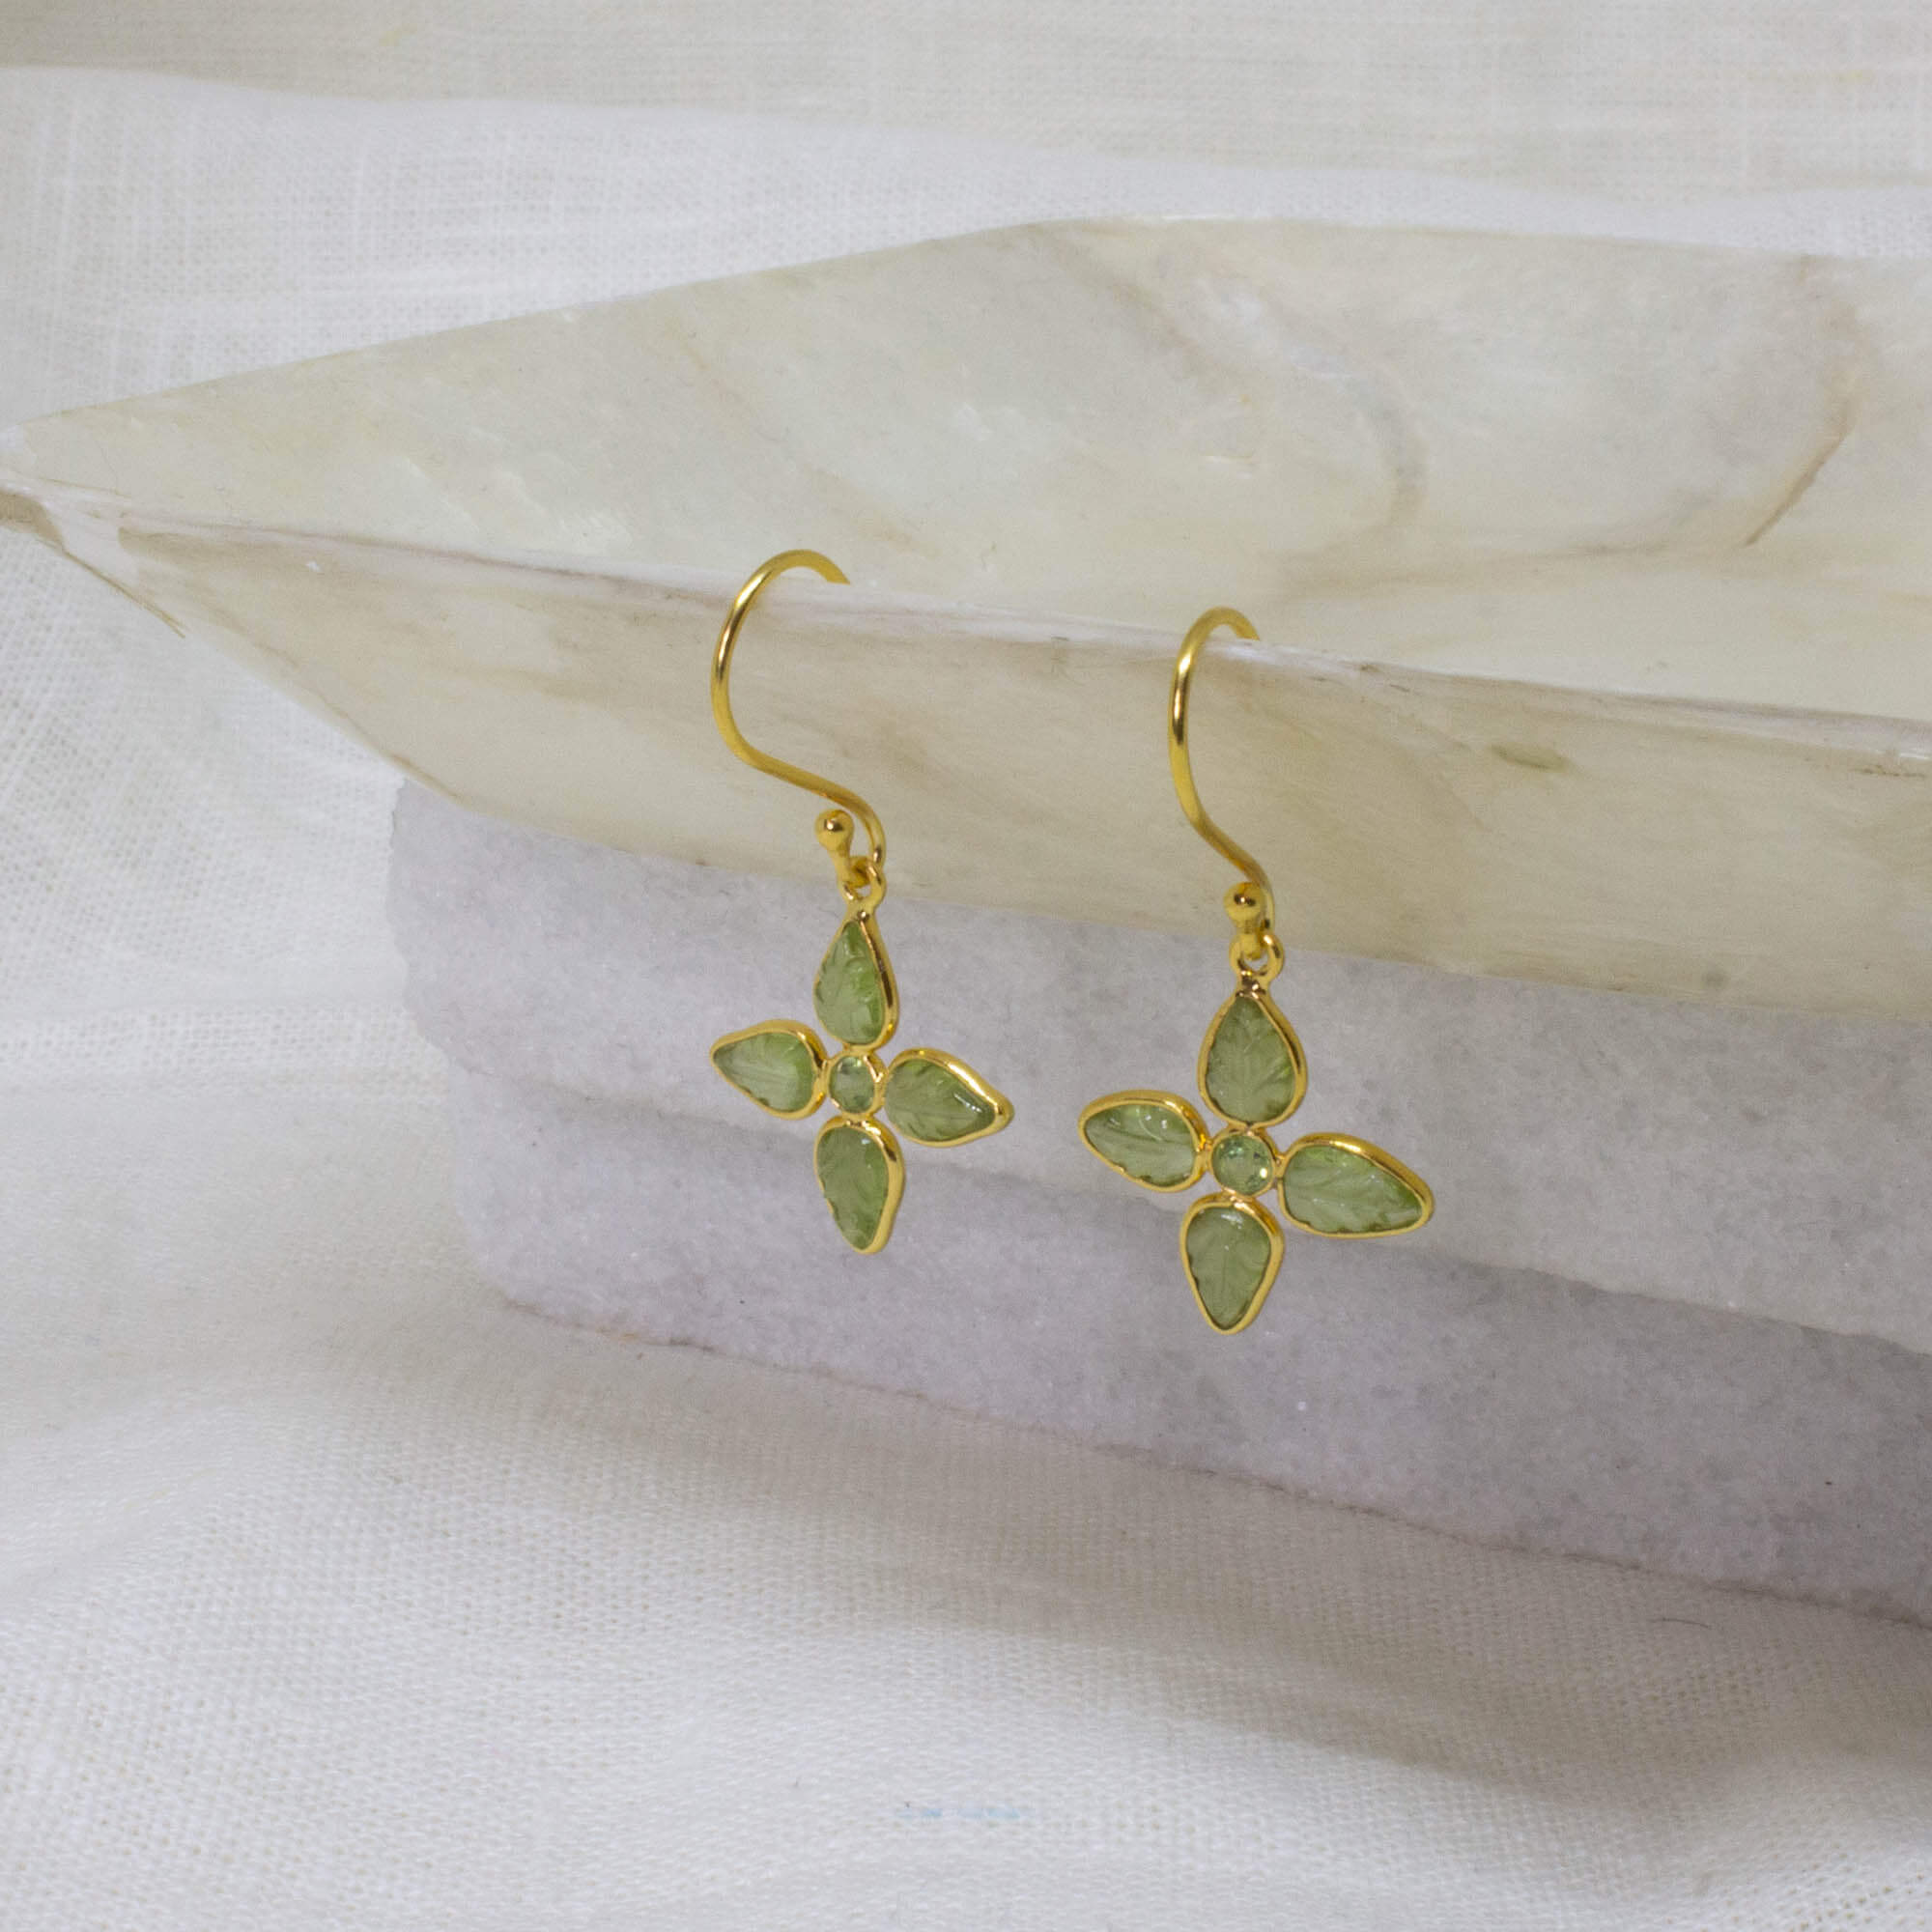 Carved peridot gemstone flower earrings in 18k gold vermeil - Beyond Biasa